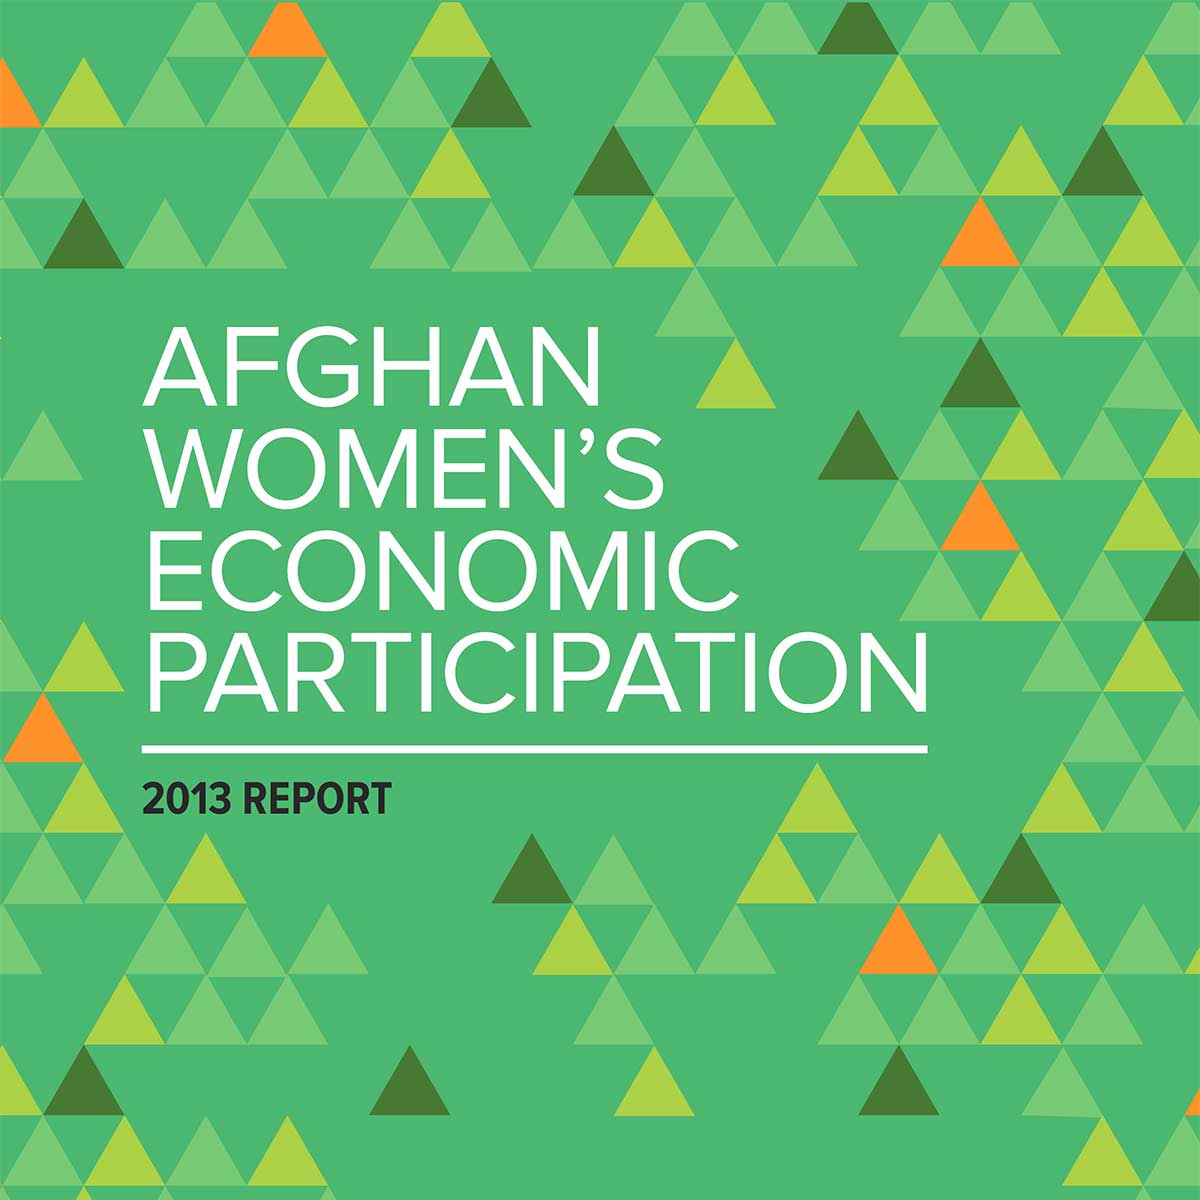 Afghan Women’s Economic Participation Report (2013)